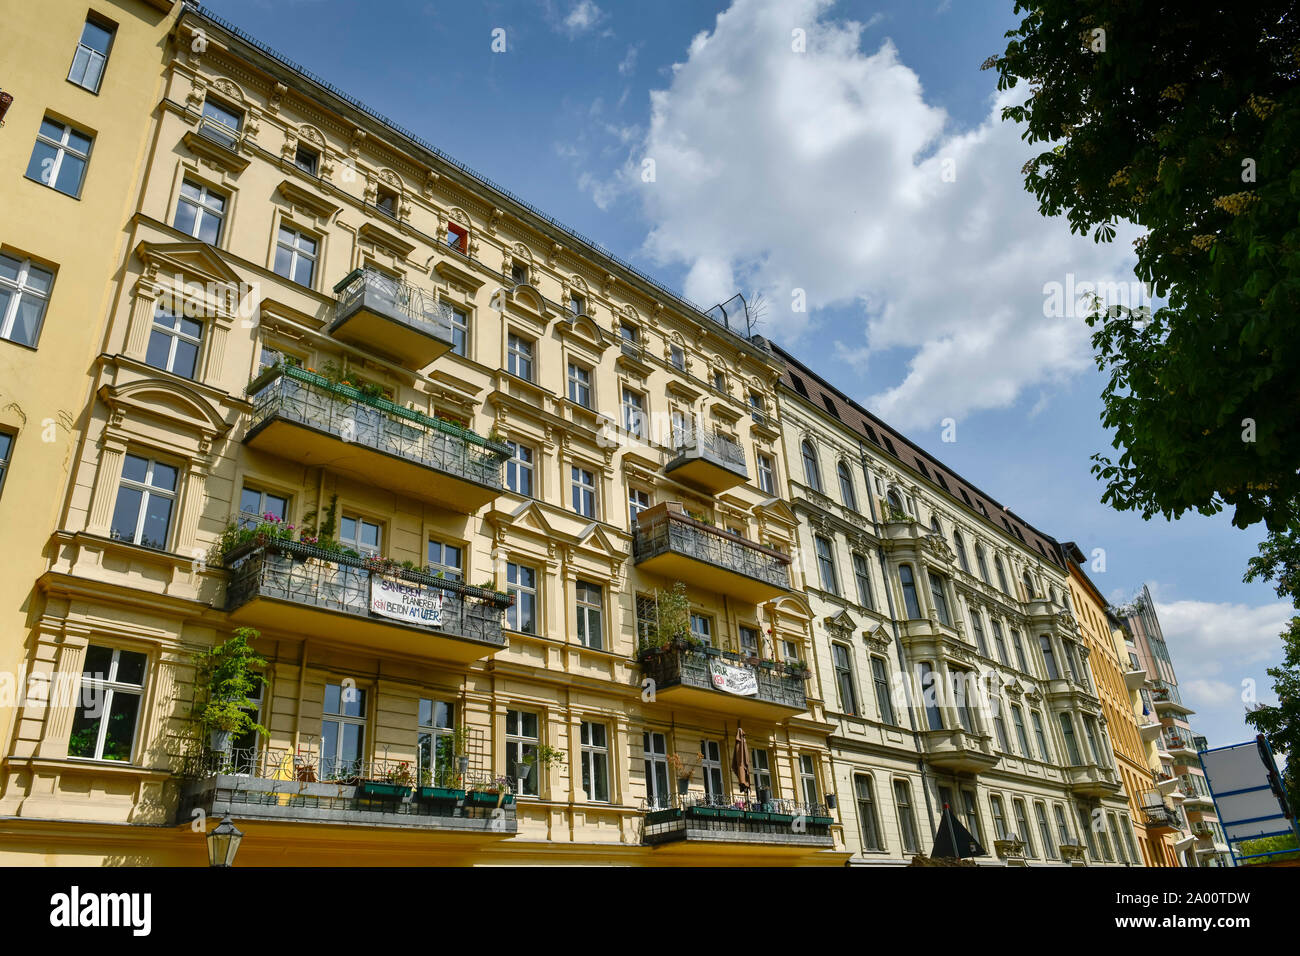 Altbauten, Fraenkelufer, Kreuzberg, Berlin, Deutschland Banque D'Images